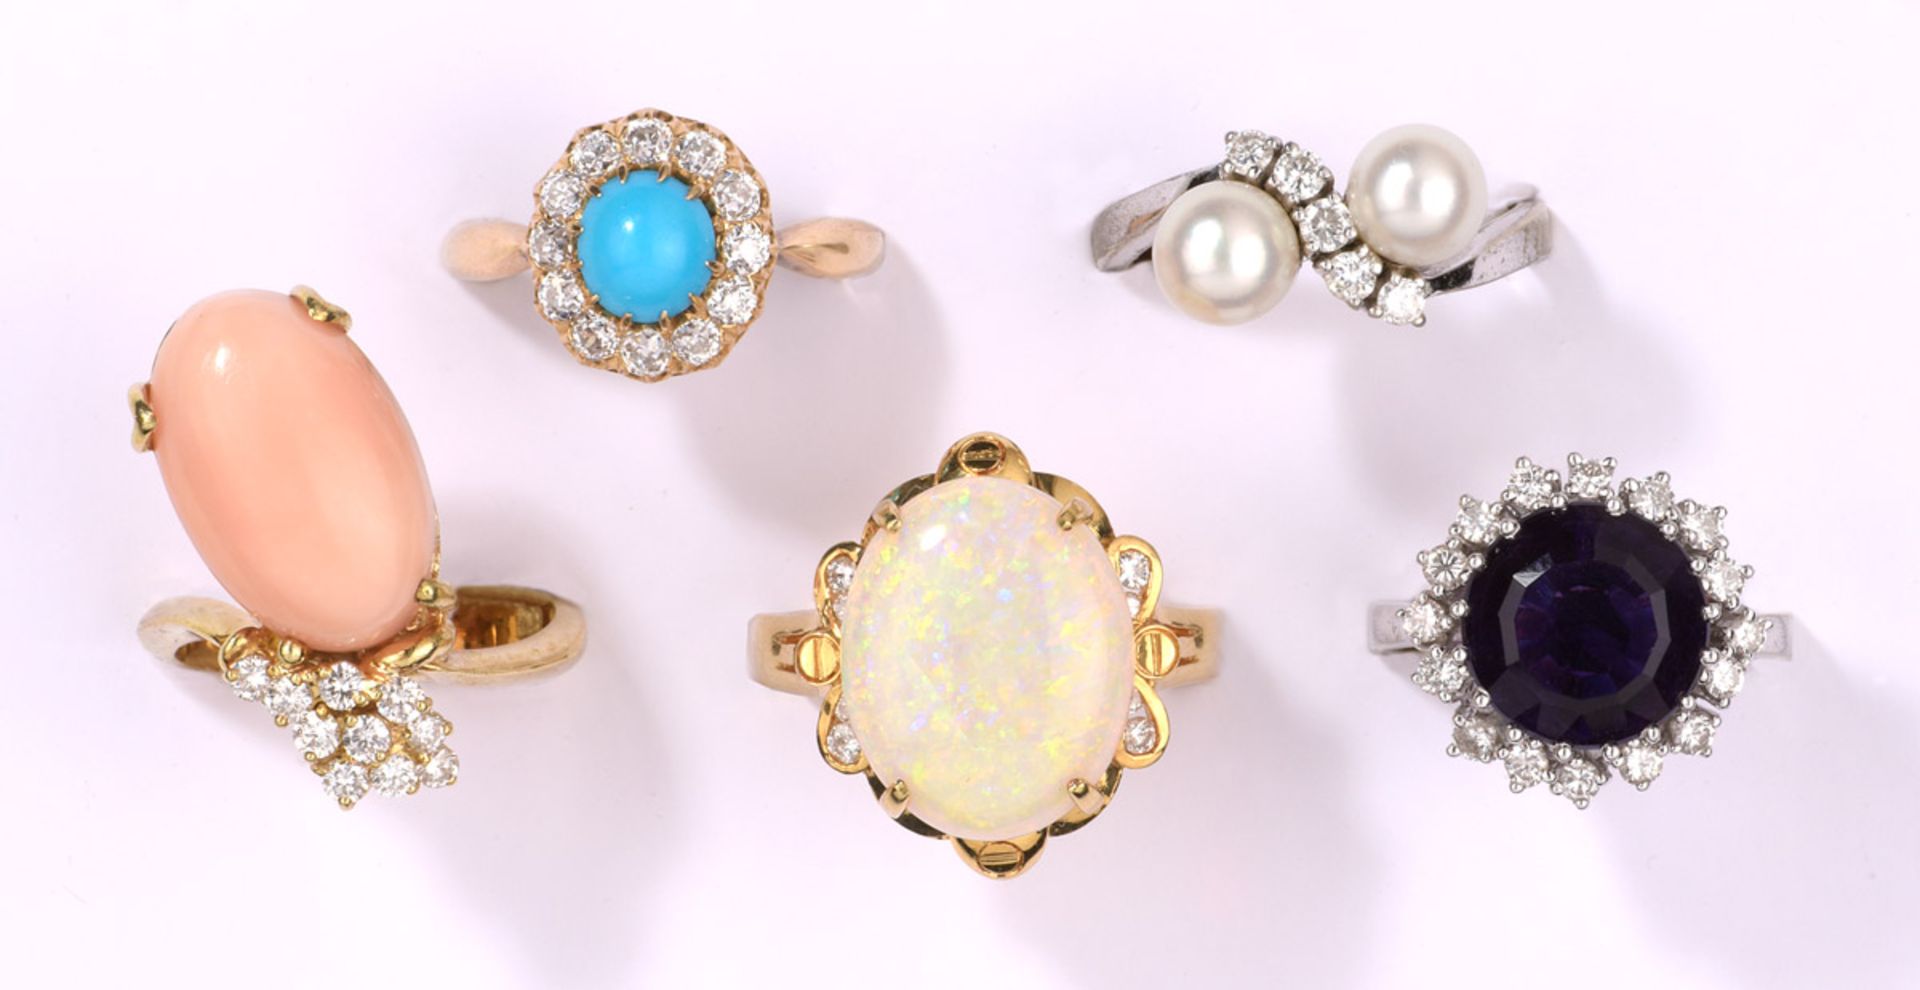 Fünf Ringe585- Gelb-/Weißgold, Brillanten, Perlen, Engelhautkoralle, Amethyst, Türkis und Opal.